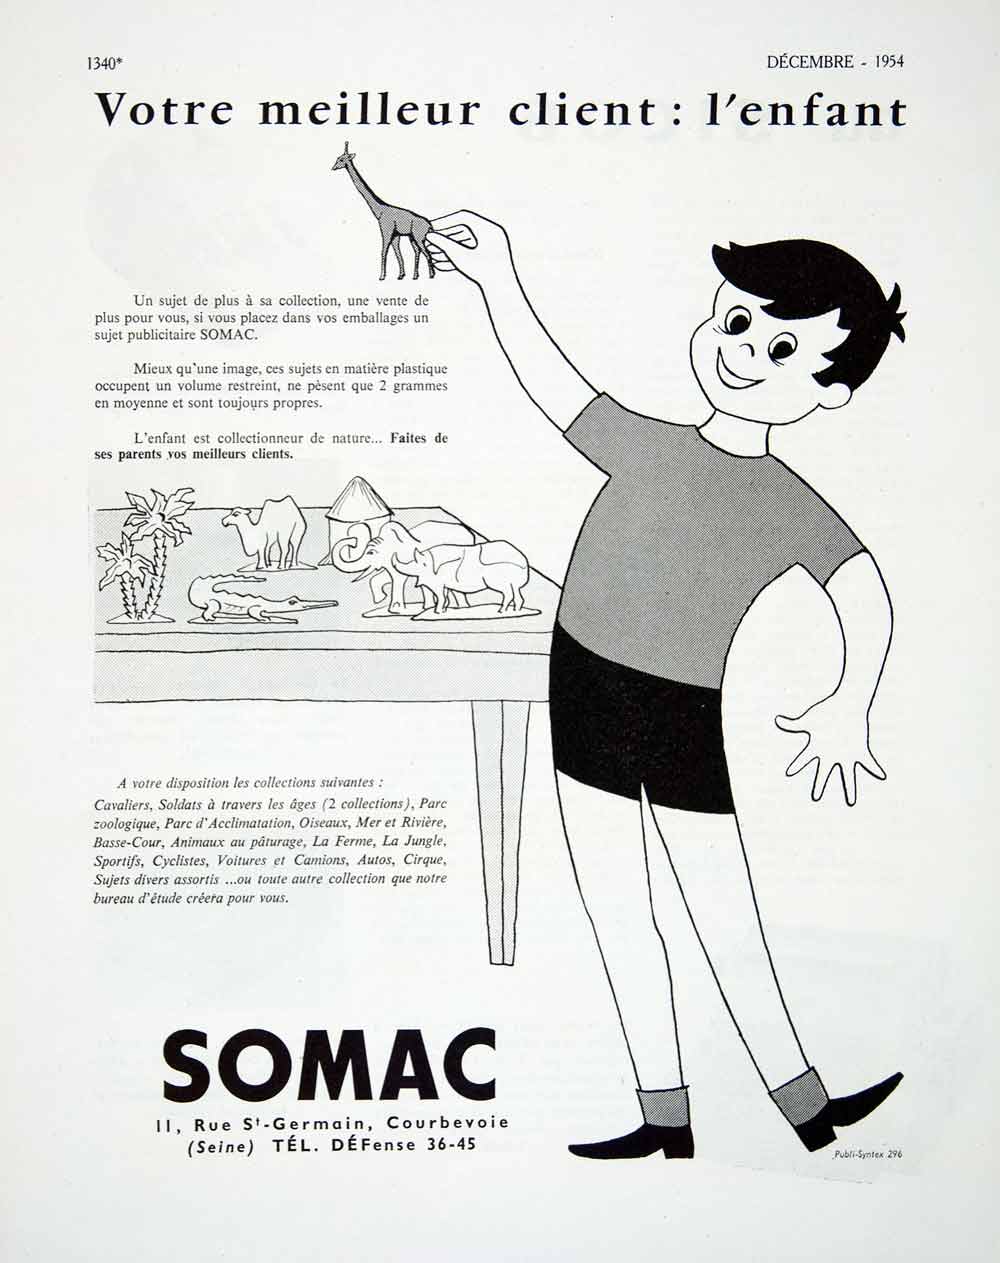 1954 Ad Somac 11 Rue Saint-Germain Courbevoie Child Son Toys Publicity VEN8